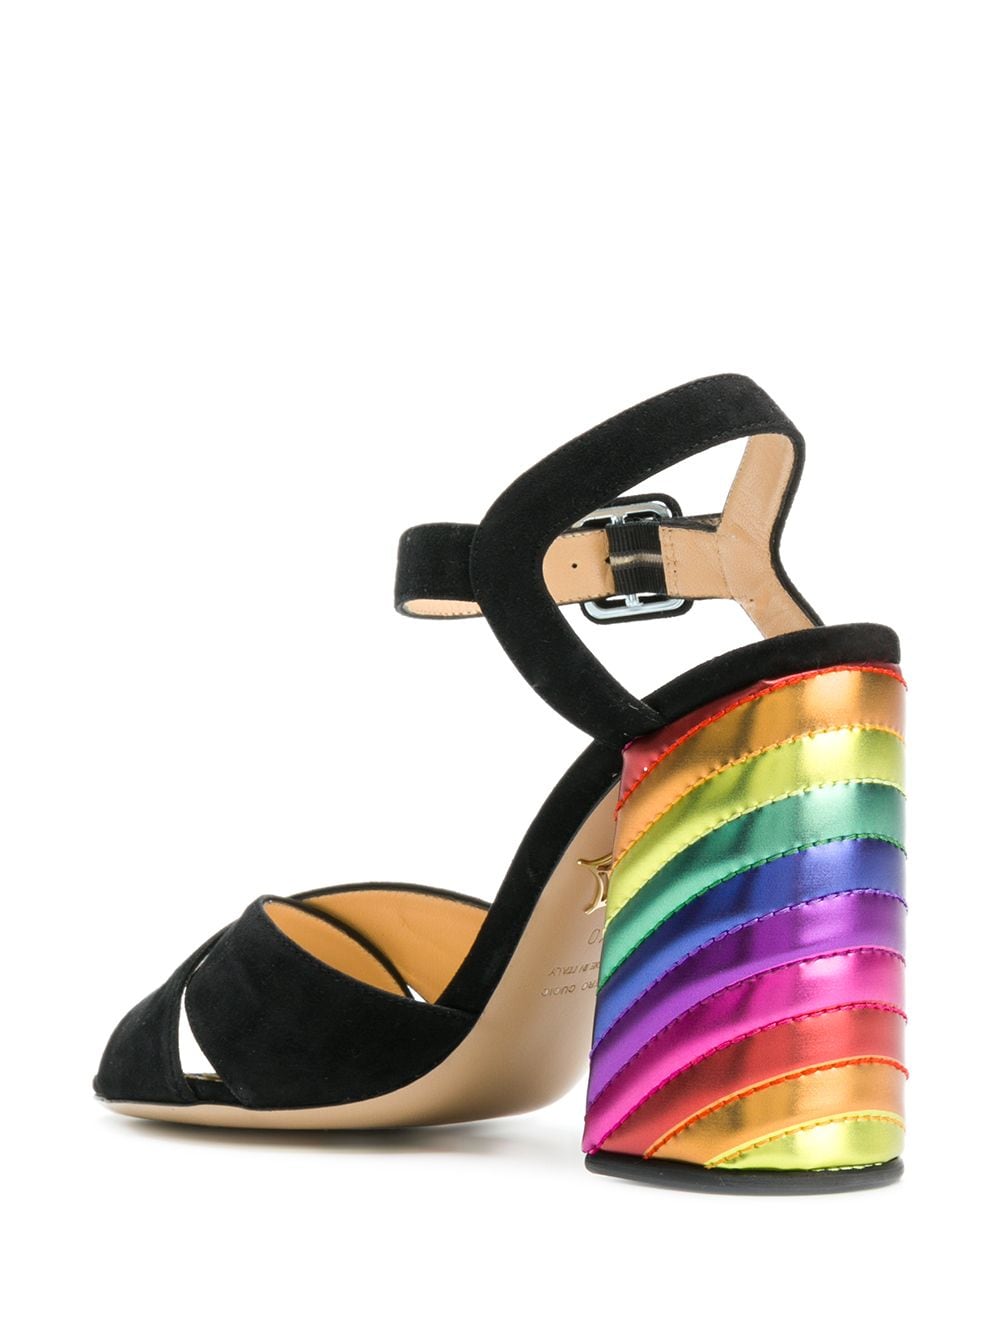 фото Charlotte olympia туфли-лодочки на радужном каблуке